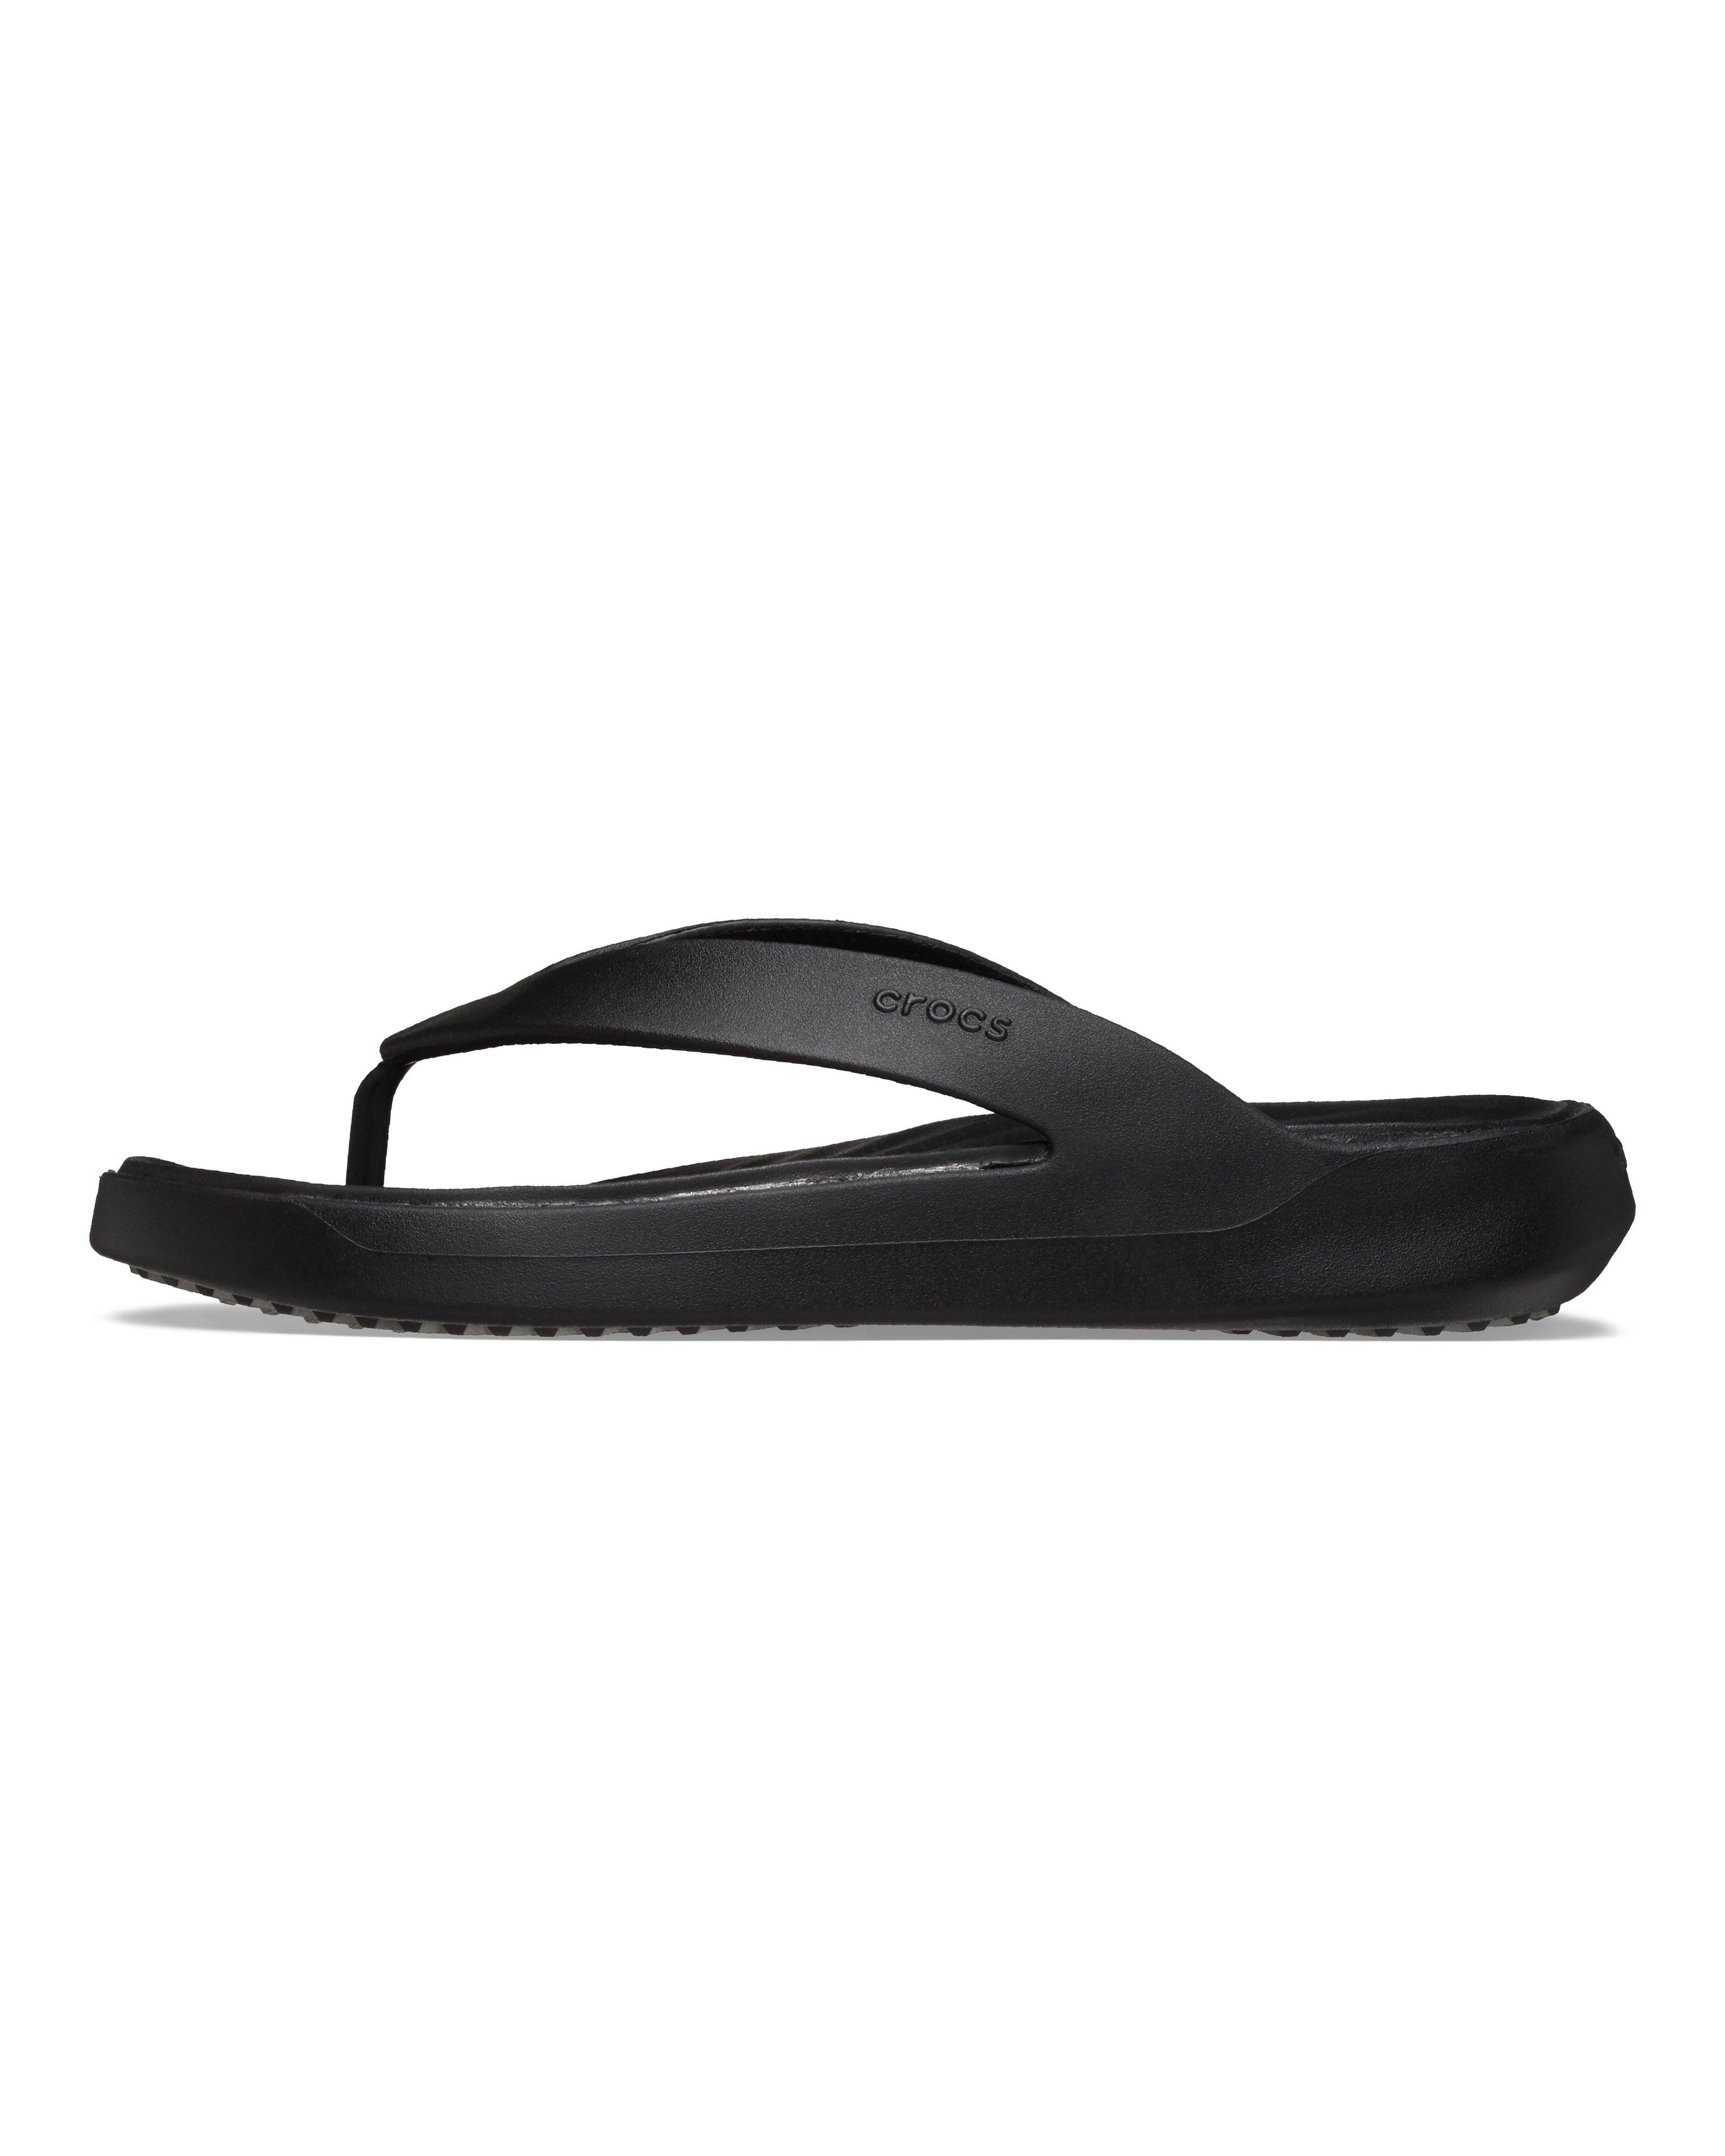 Crocs Women’s Getaway Flip Flops -  Black